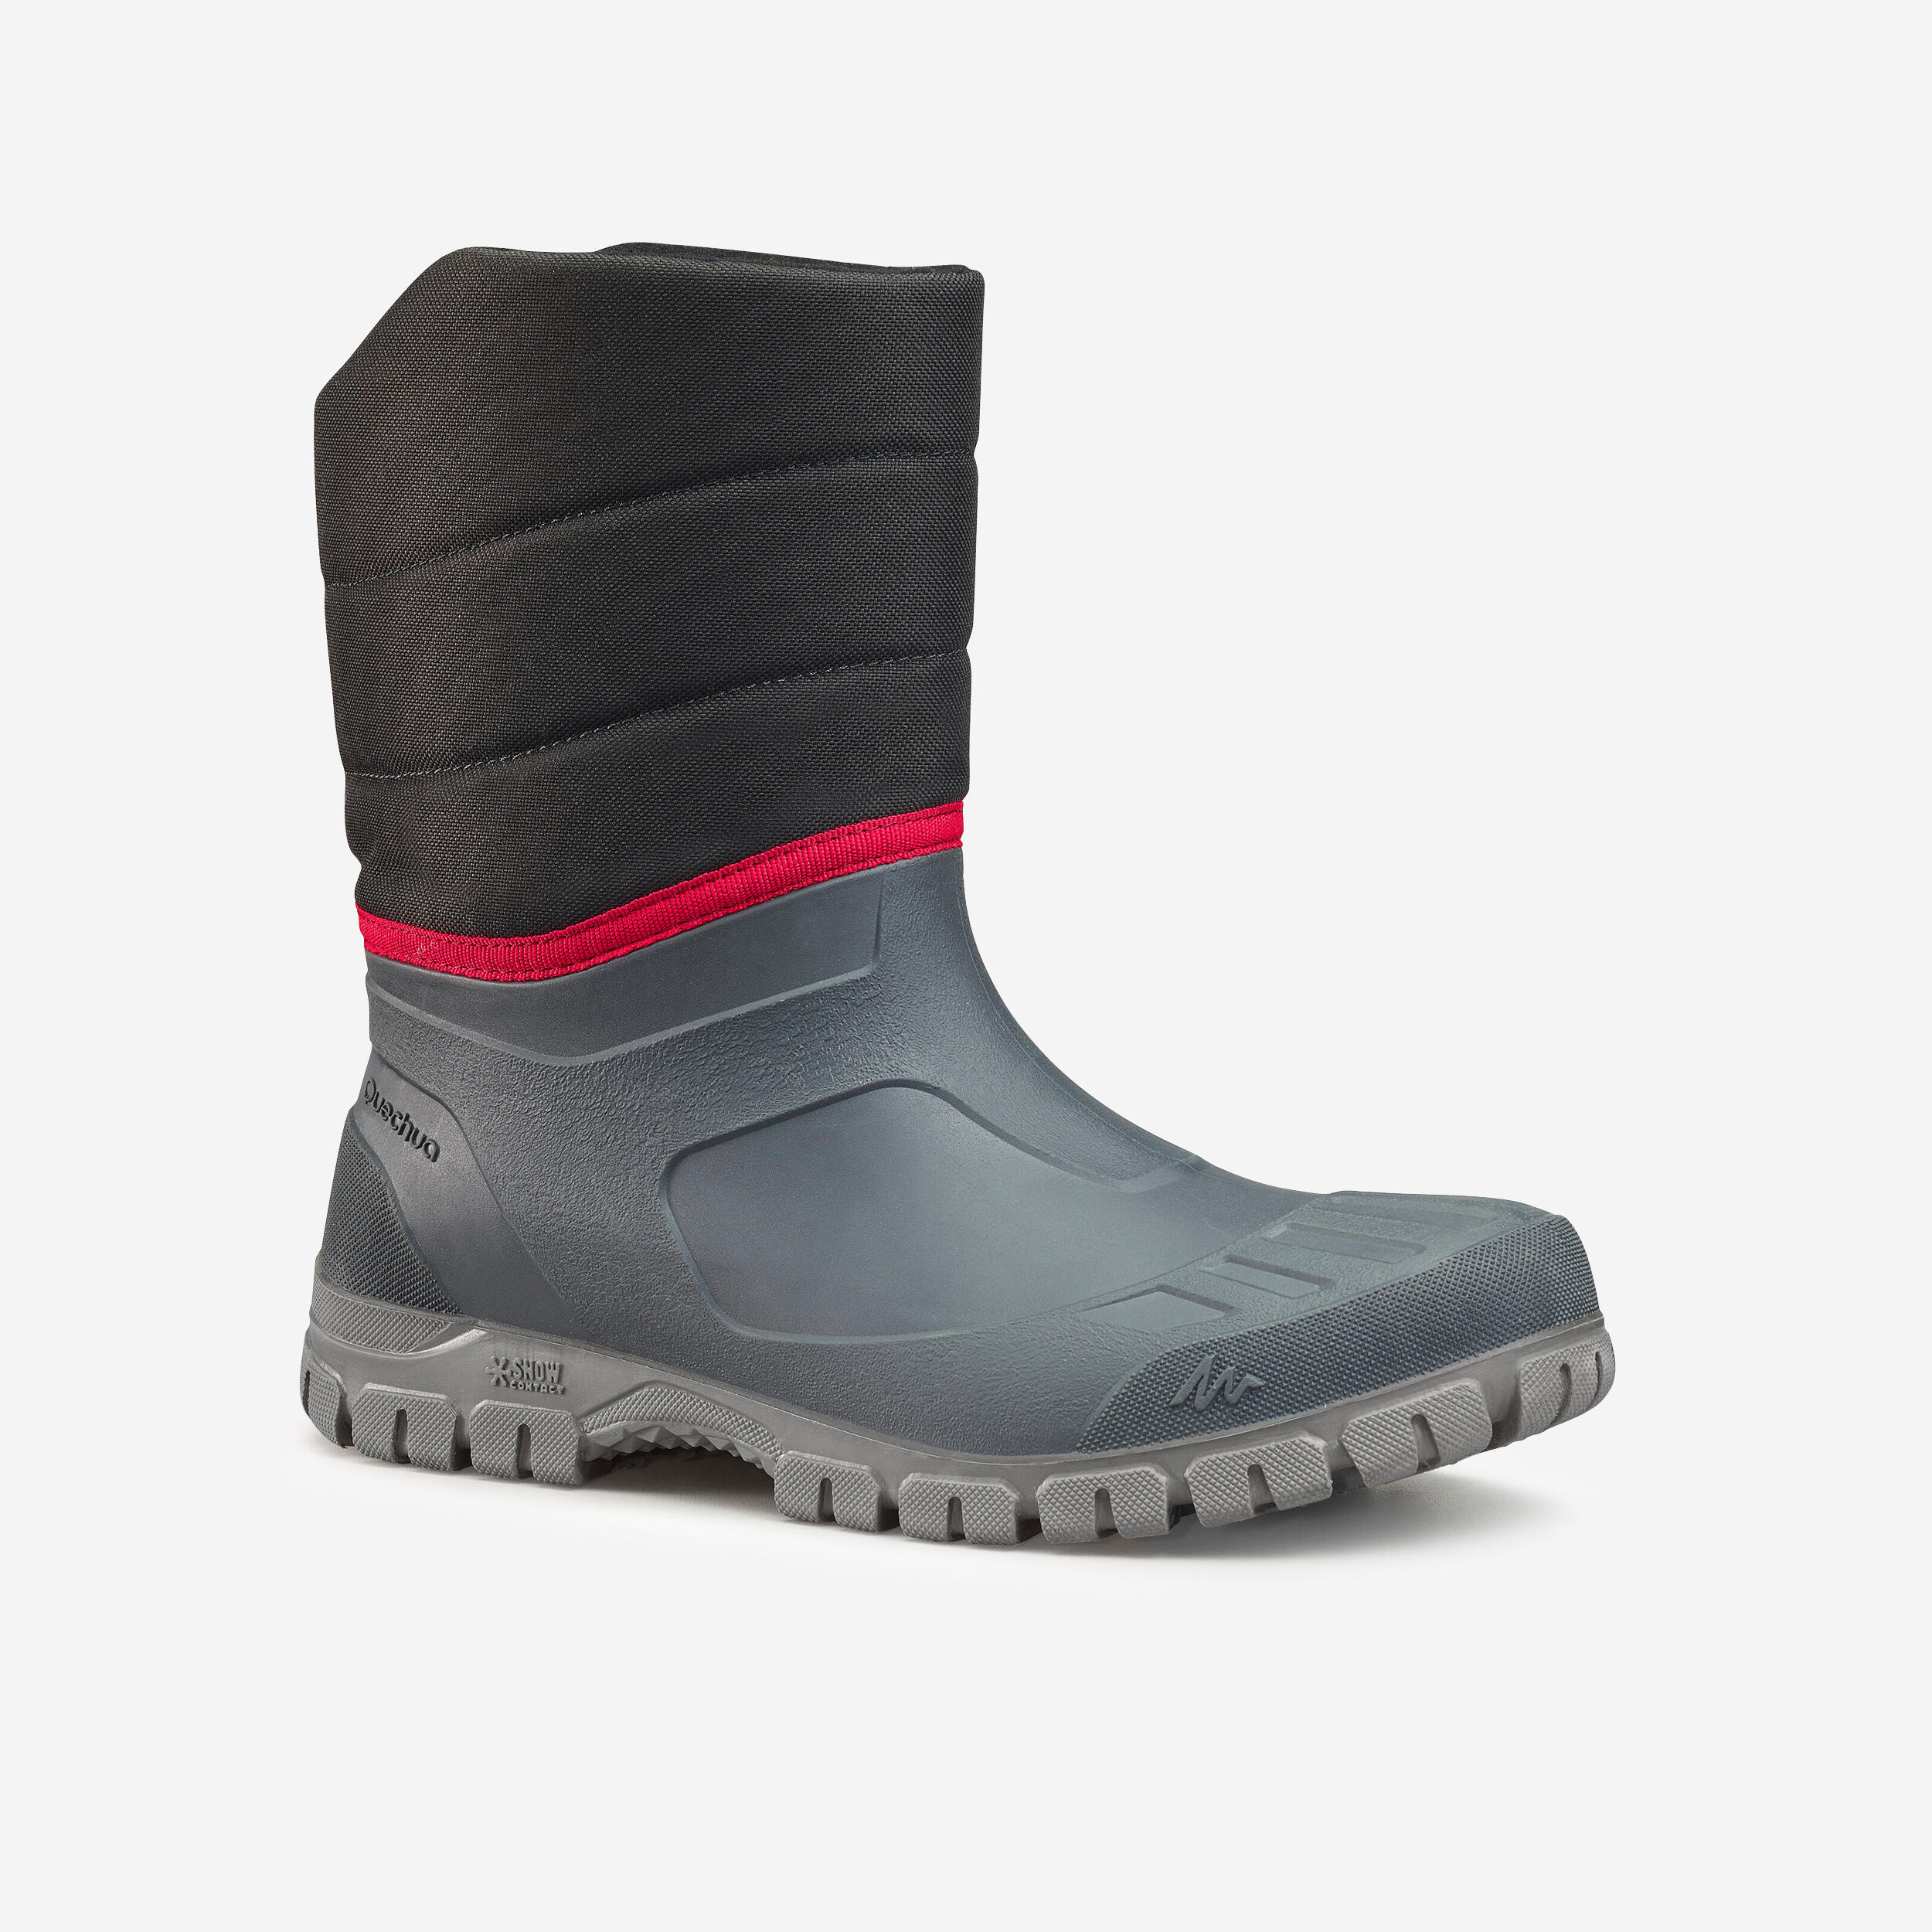 Men’s Warm Waterproof Snow Boots - SH100   1/6